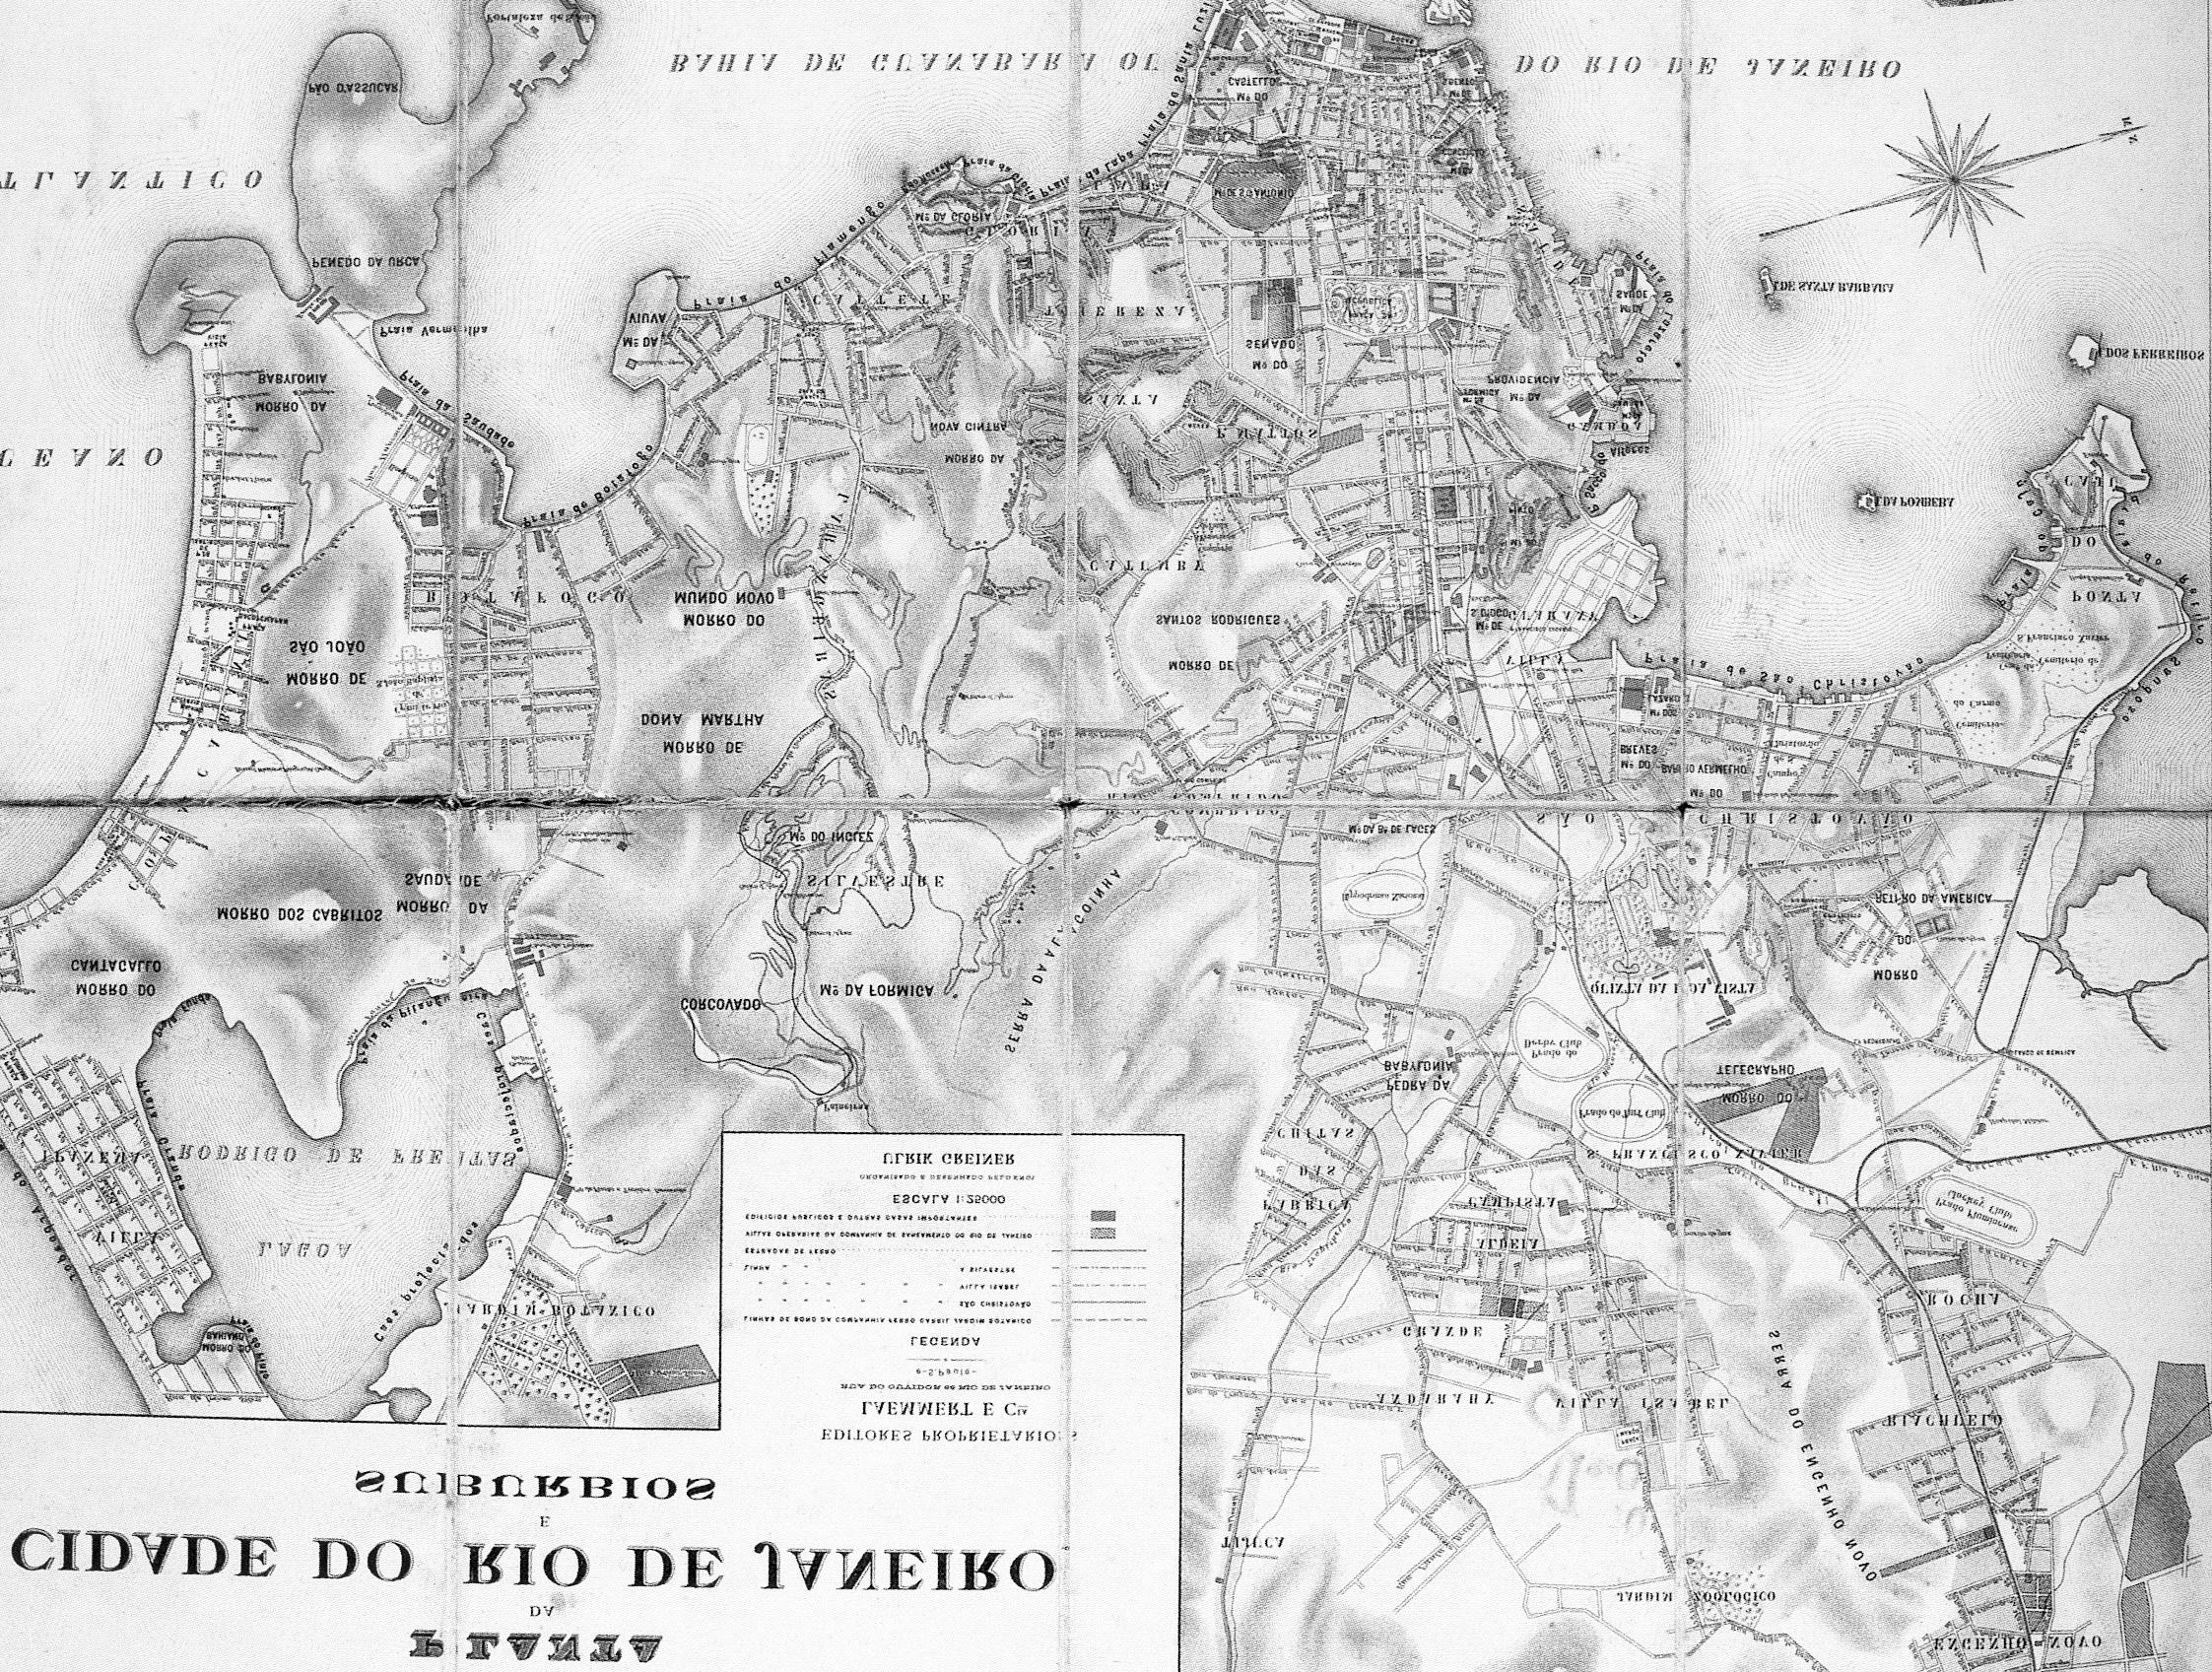 1890 Fuente: Prefeitura da Cidade do Rio de Janeiro. 2000.